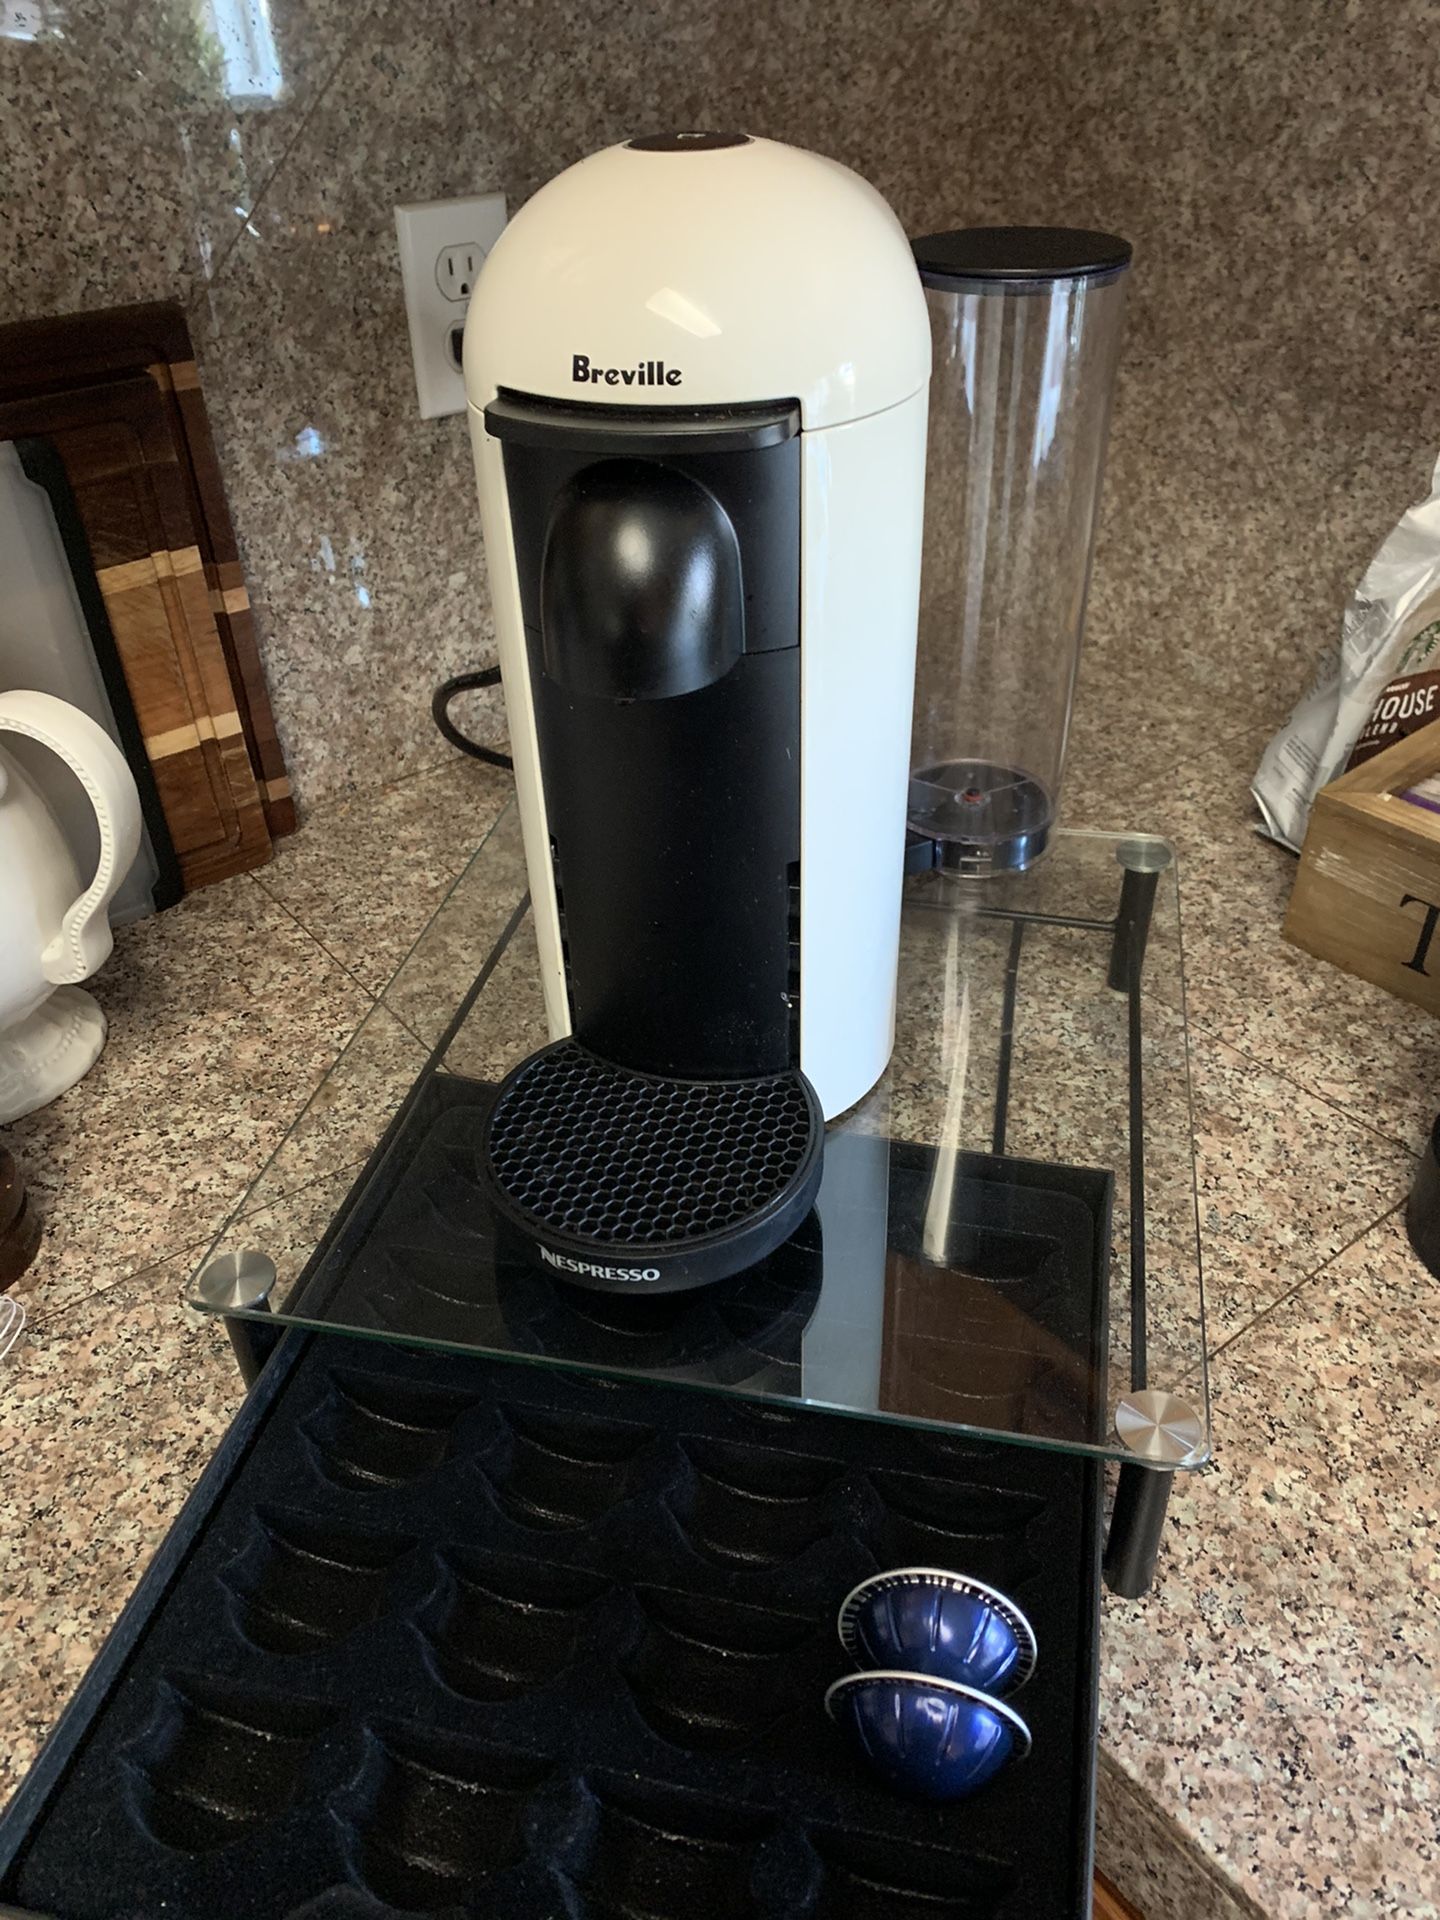 Nespresso Breville machine